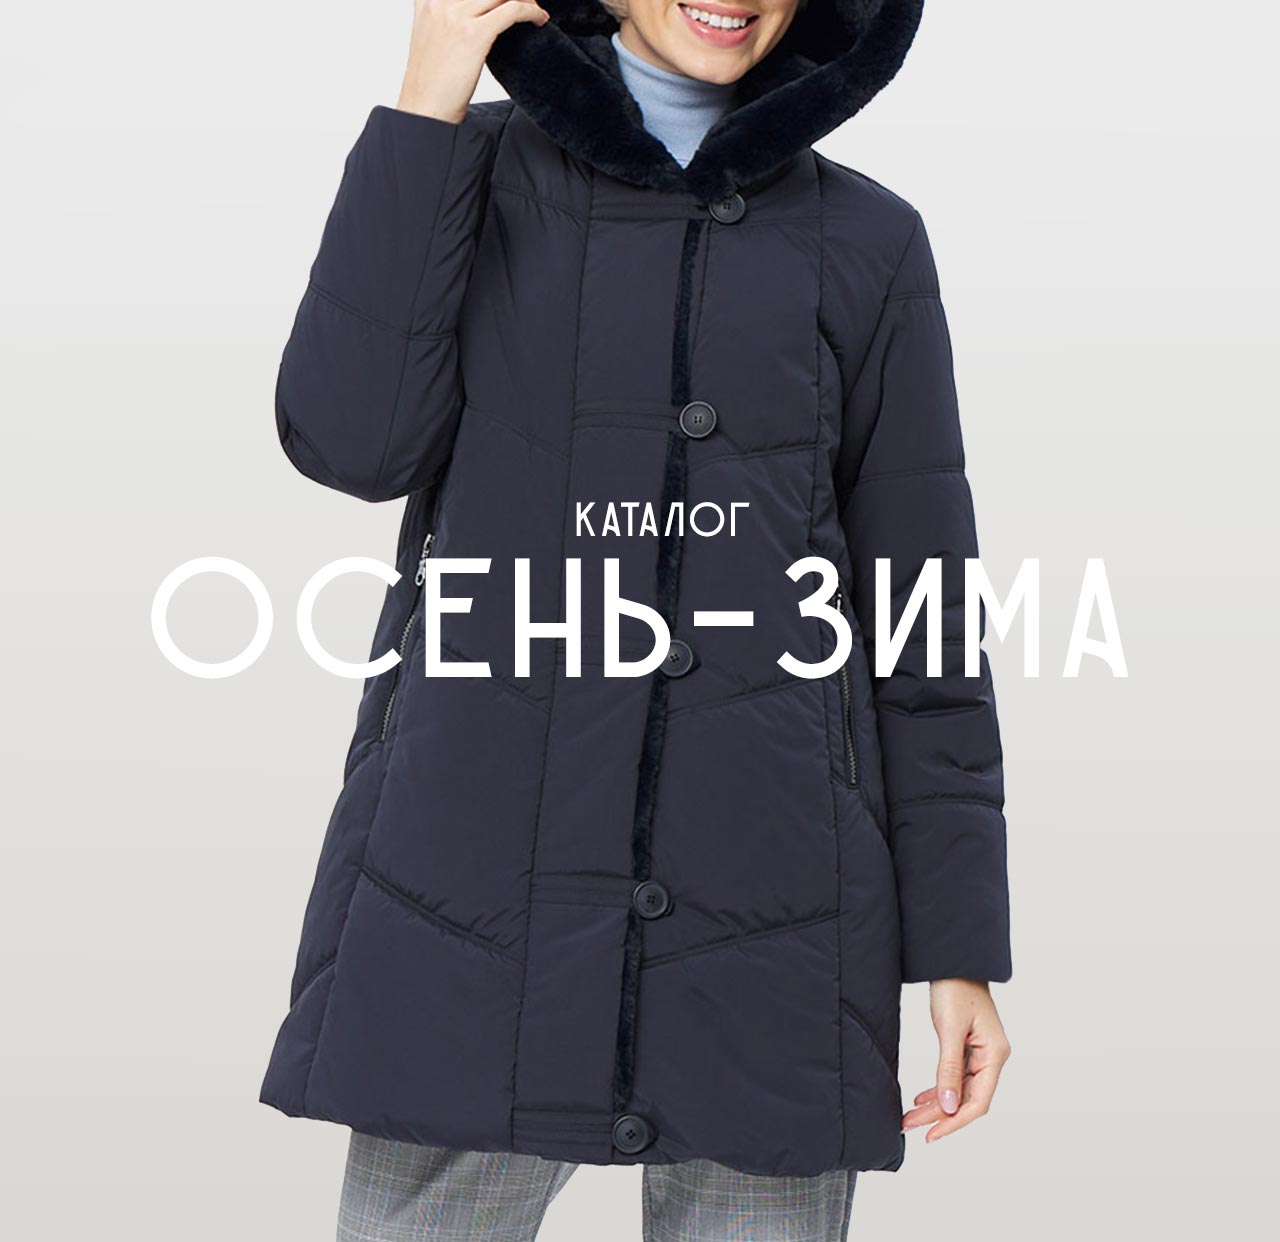 Dixi Coat коллекция Осень-Зима